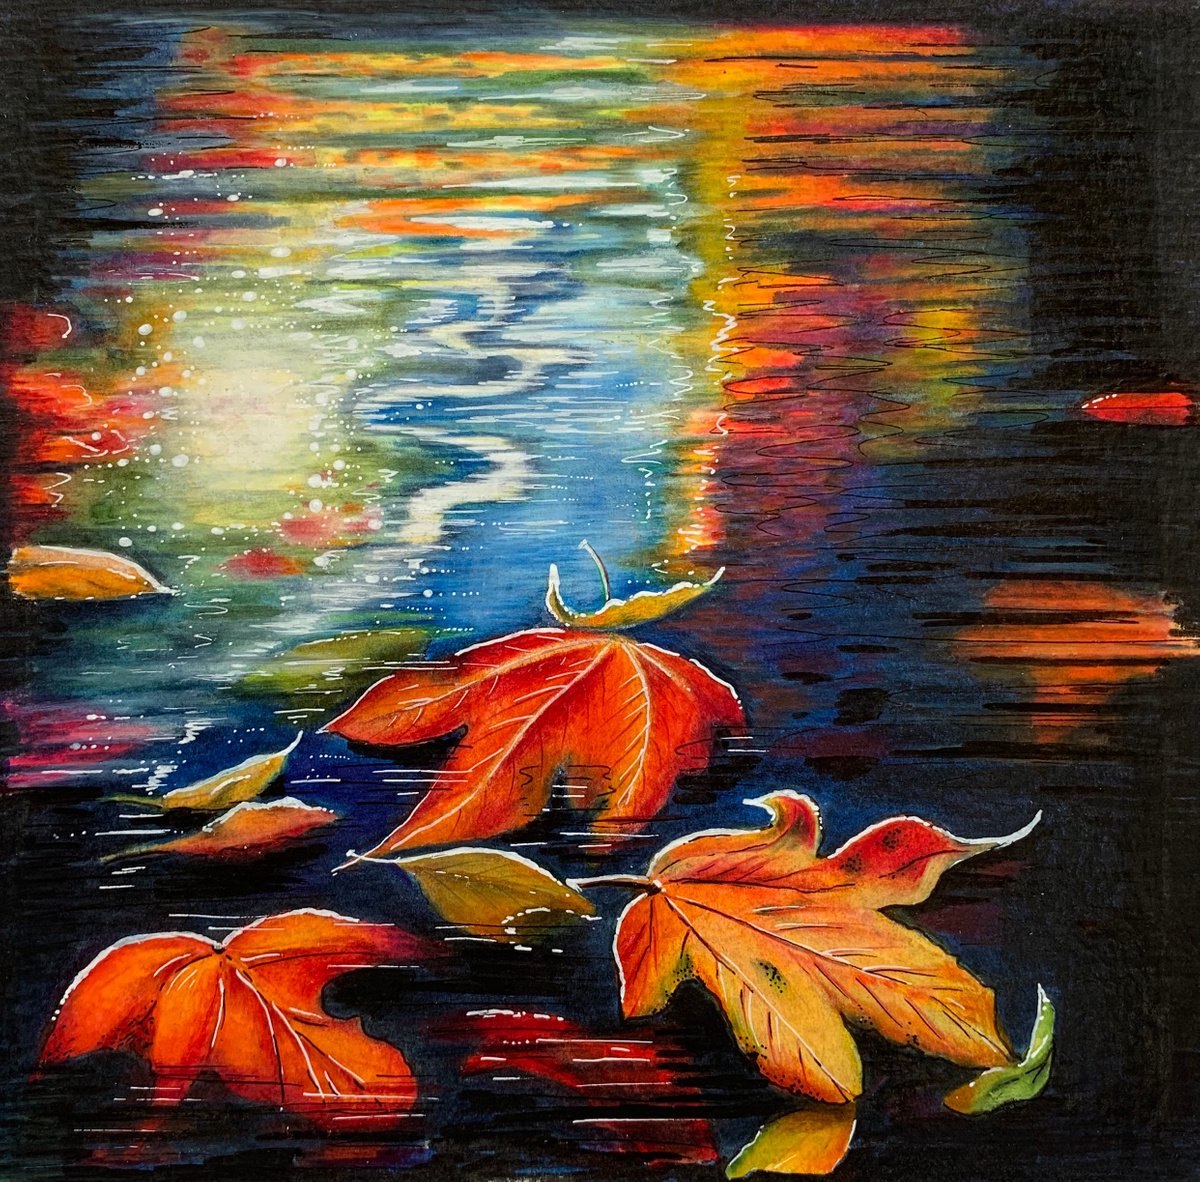 Autumn pond by Karen Elaine Evans